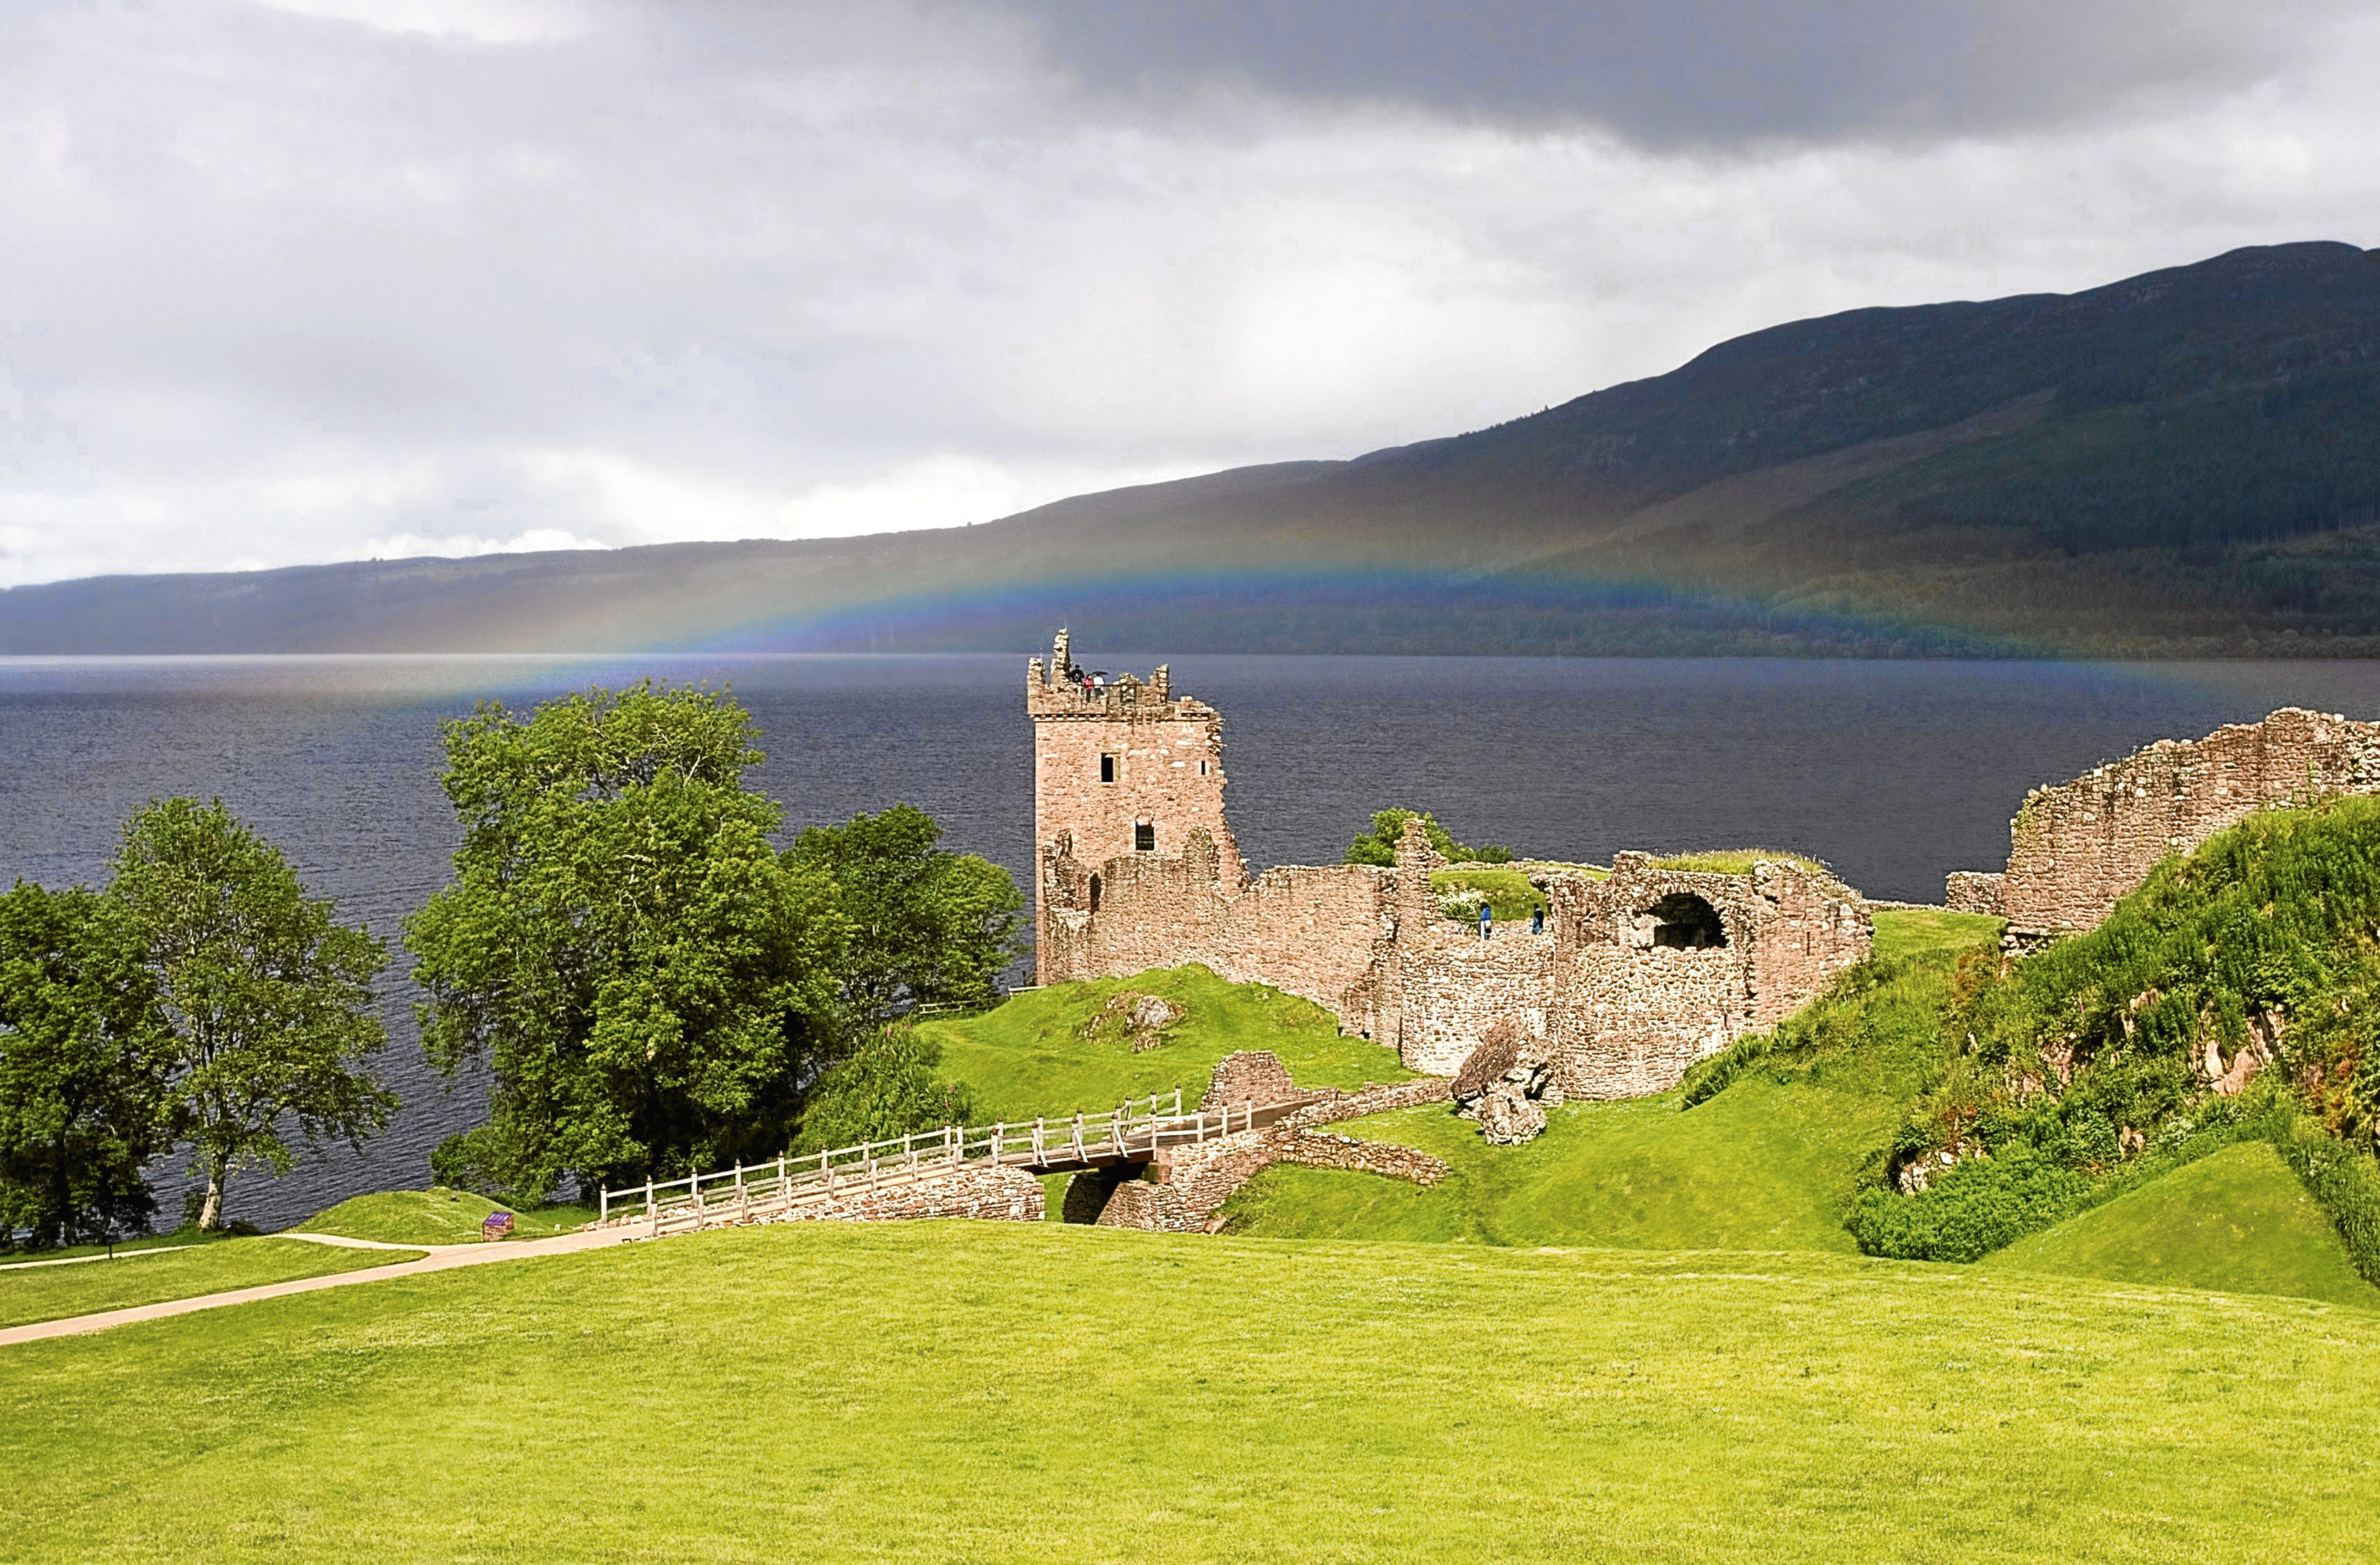 Urquhart Castle by Loch Ness.